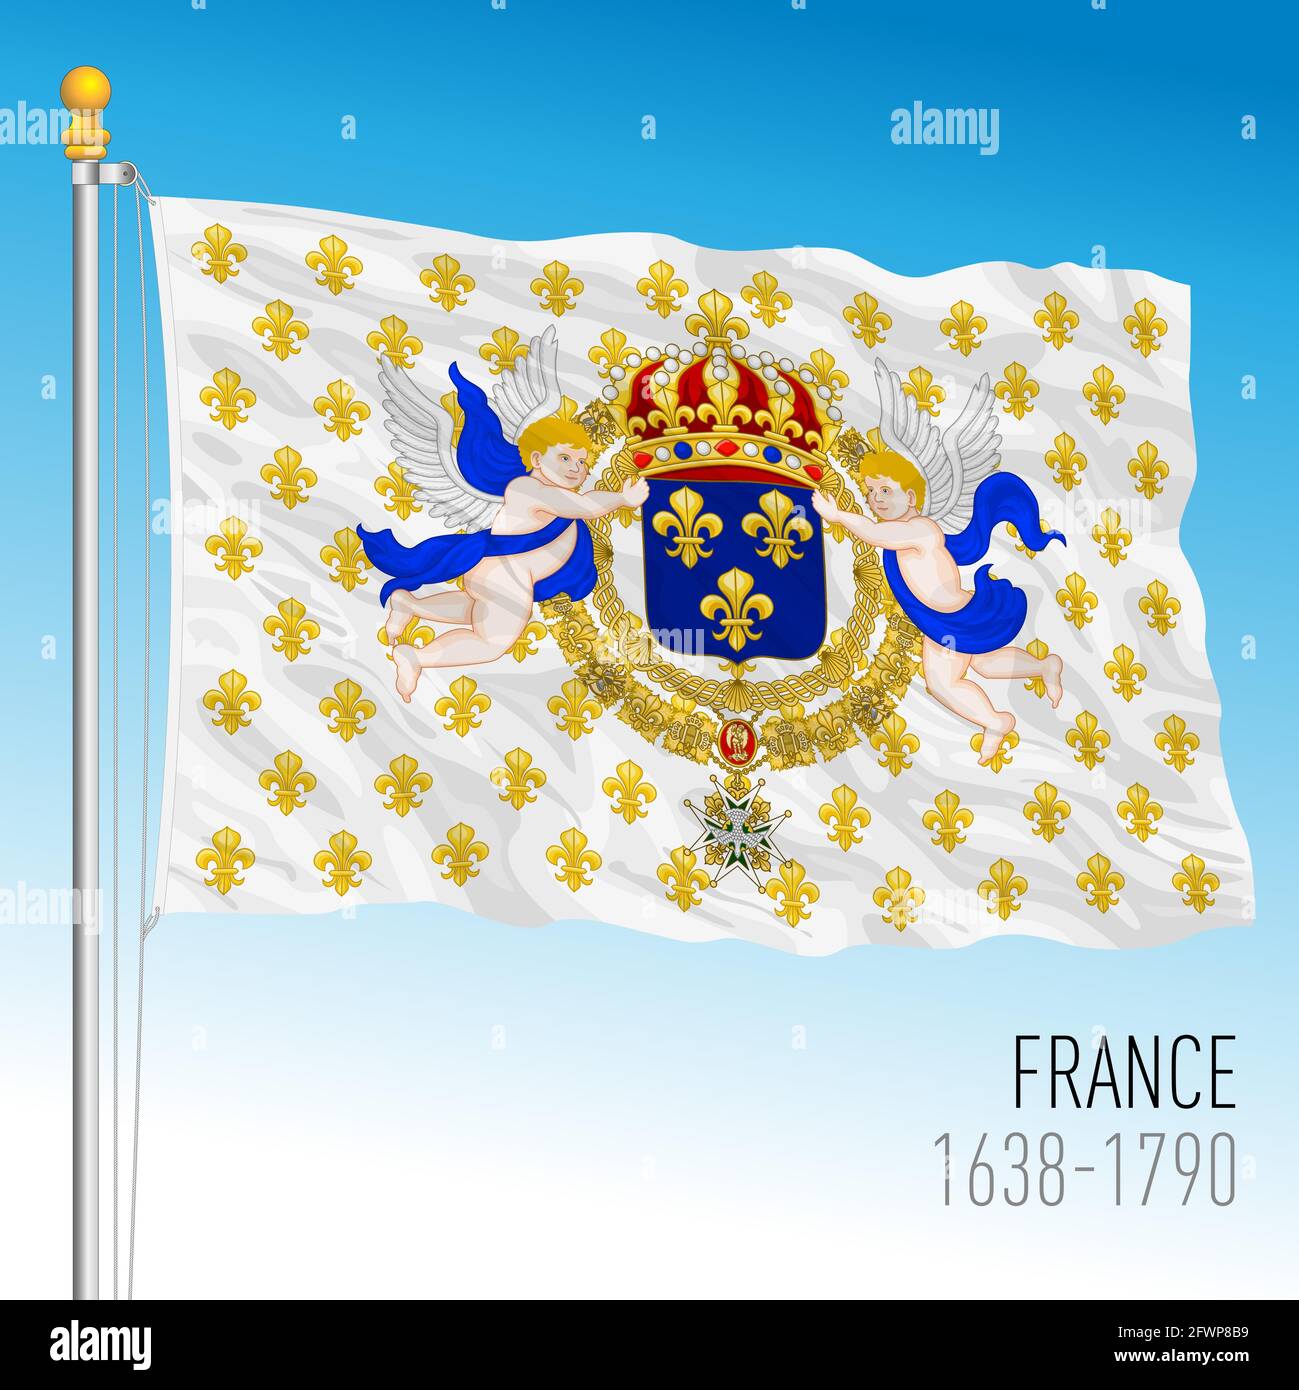 Royaume de France, drapeau historique, 1638 - 1790 Illustration de Vecteur